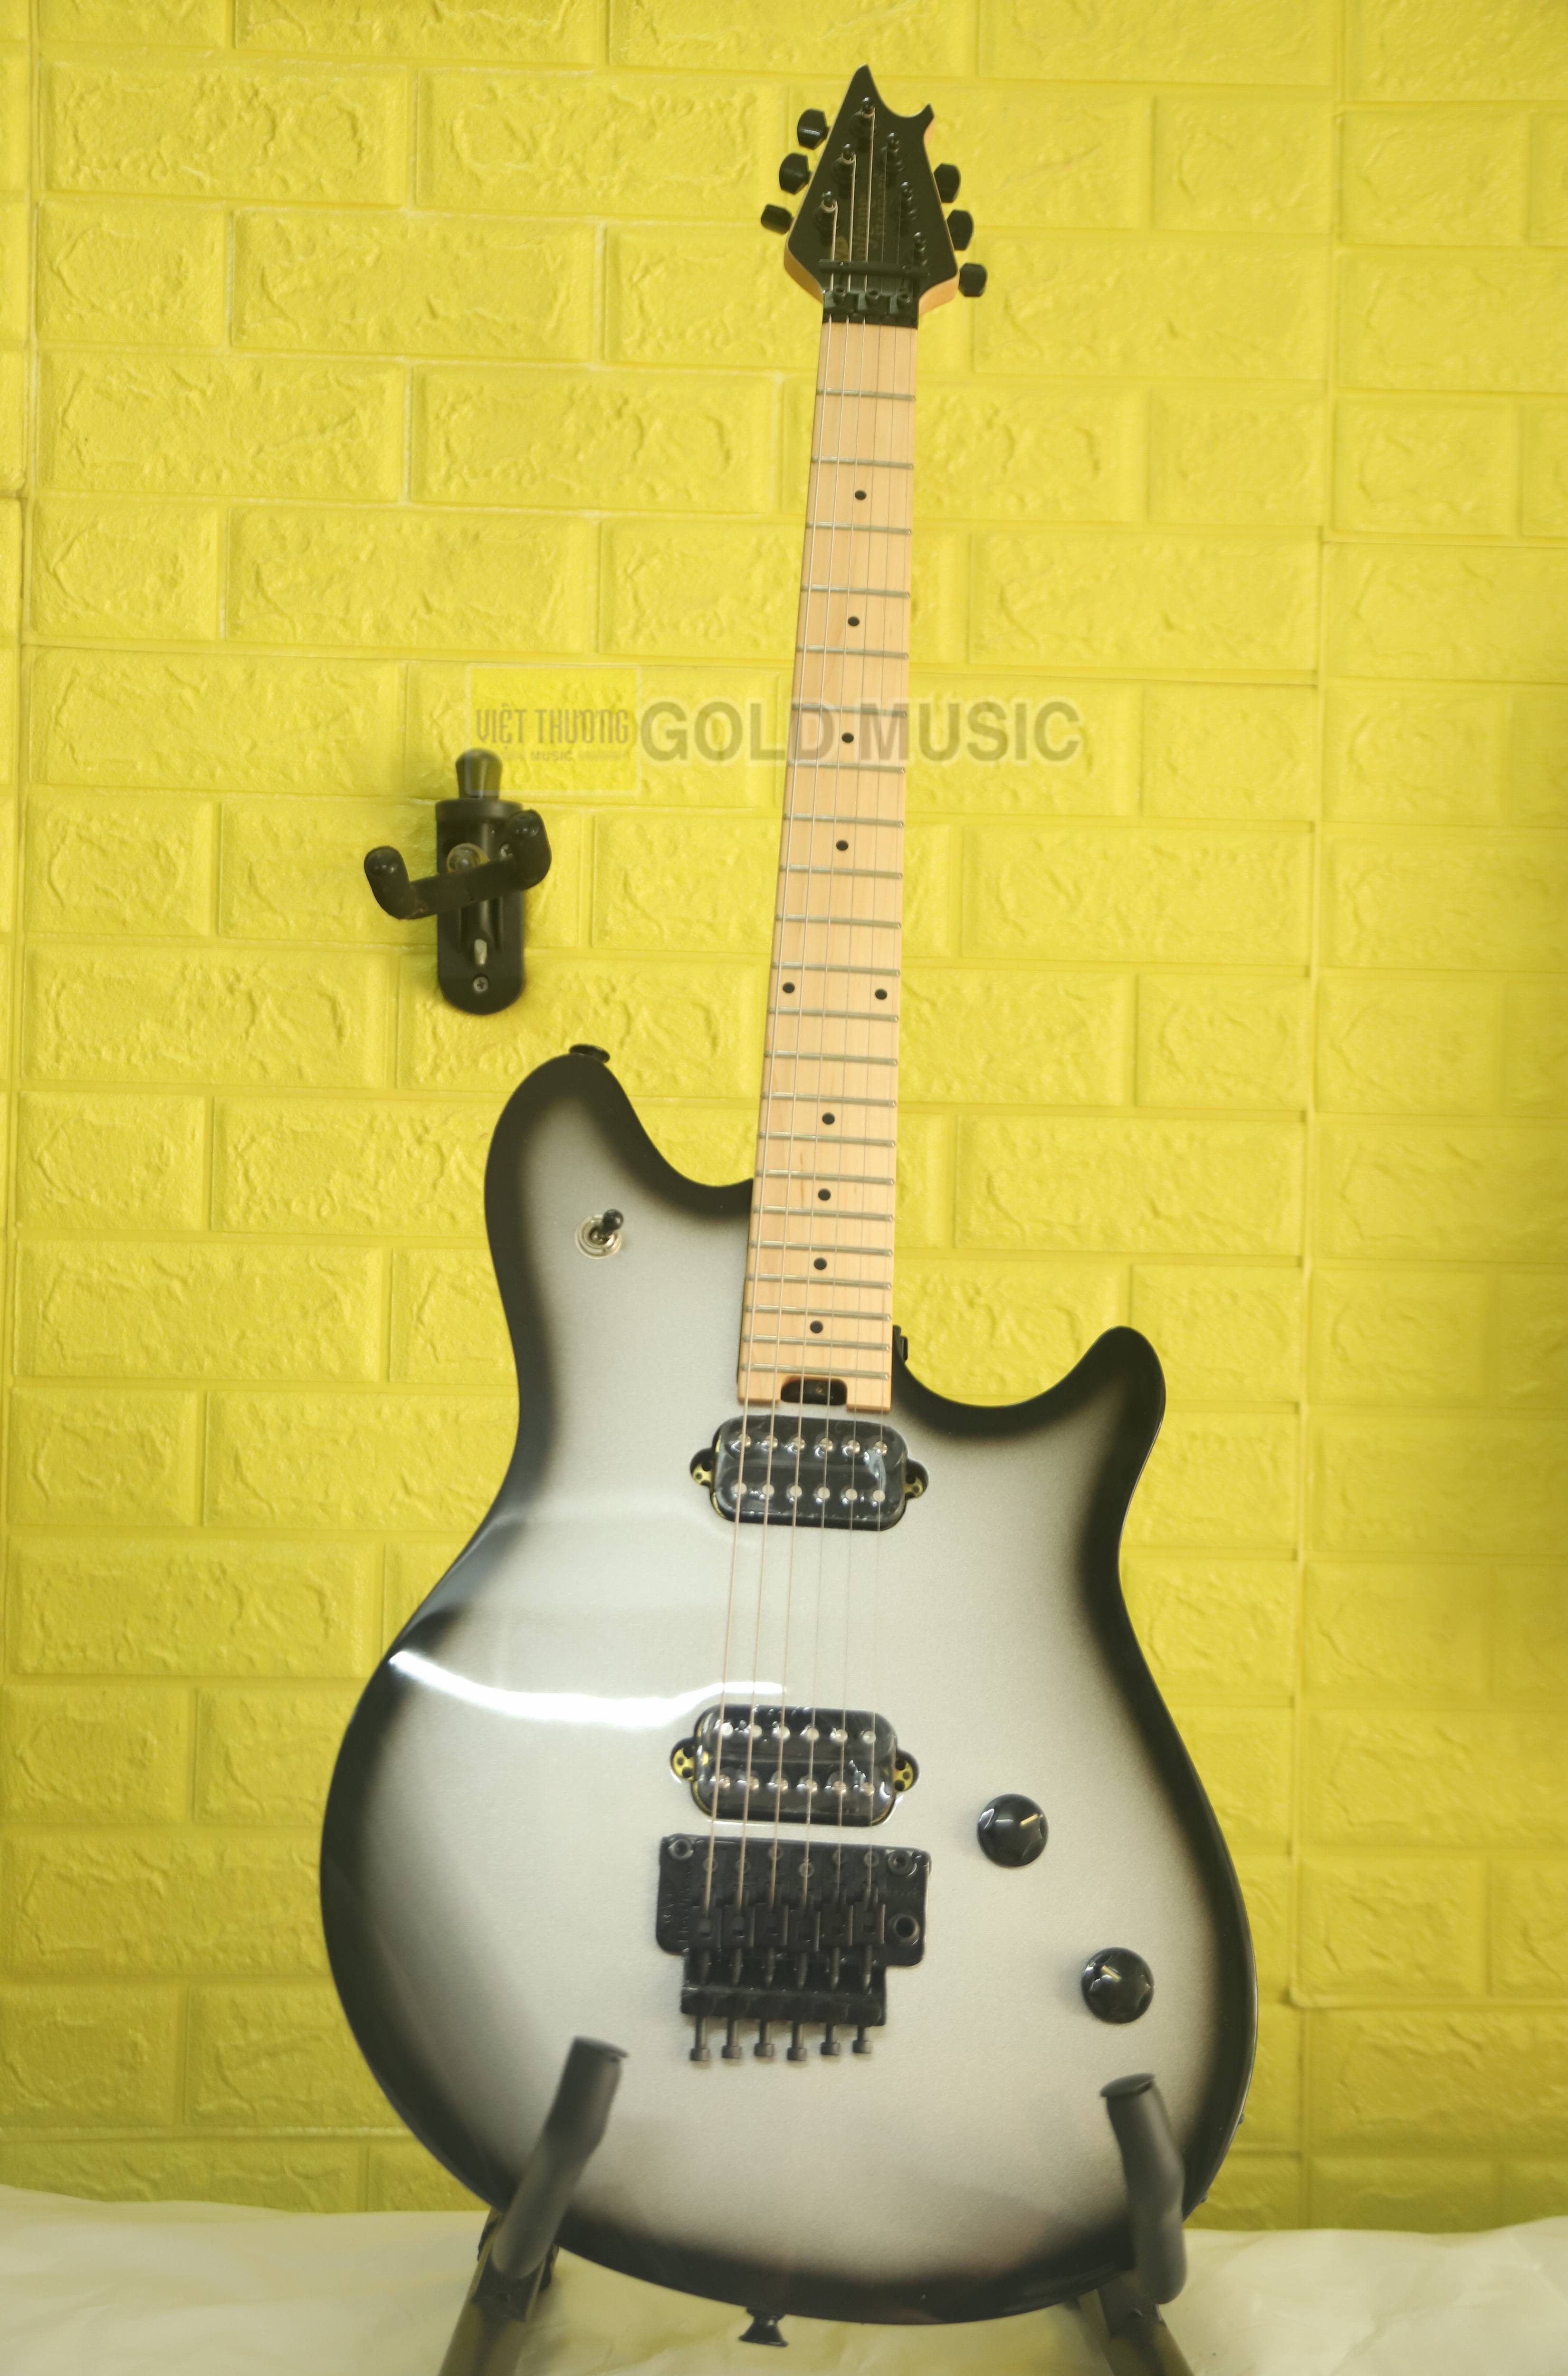 Đàn guitar điện Fender EVH WOLFG WG STD MPL FB SILVERBURST - 5107001545 đàn điện